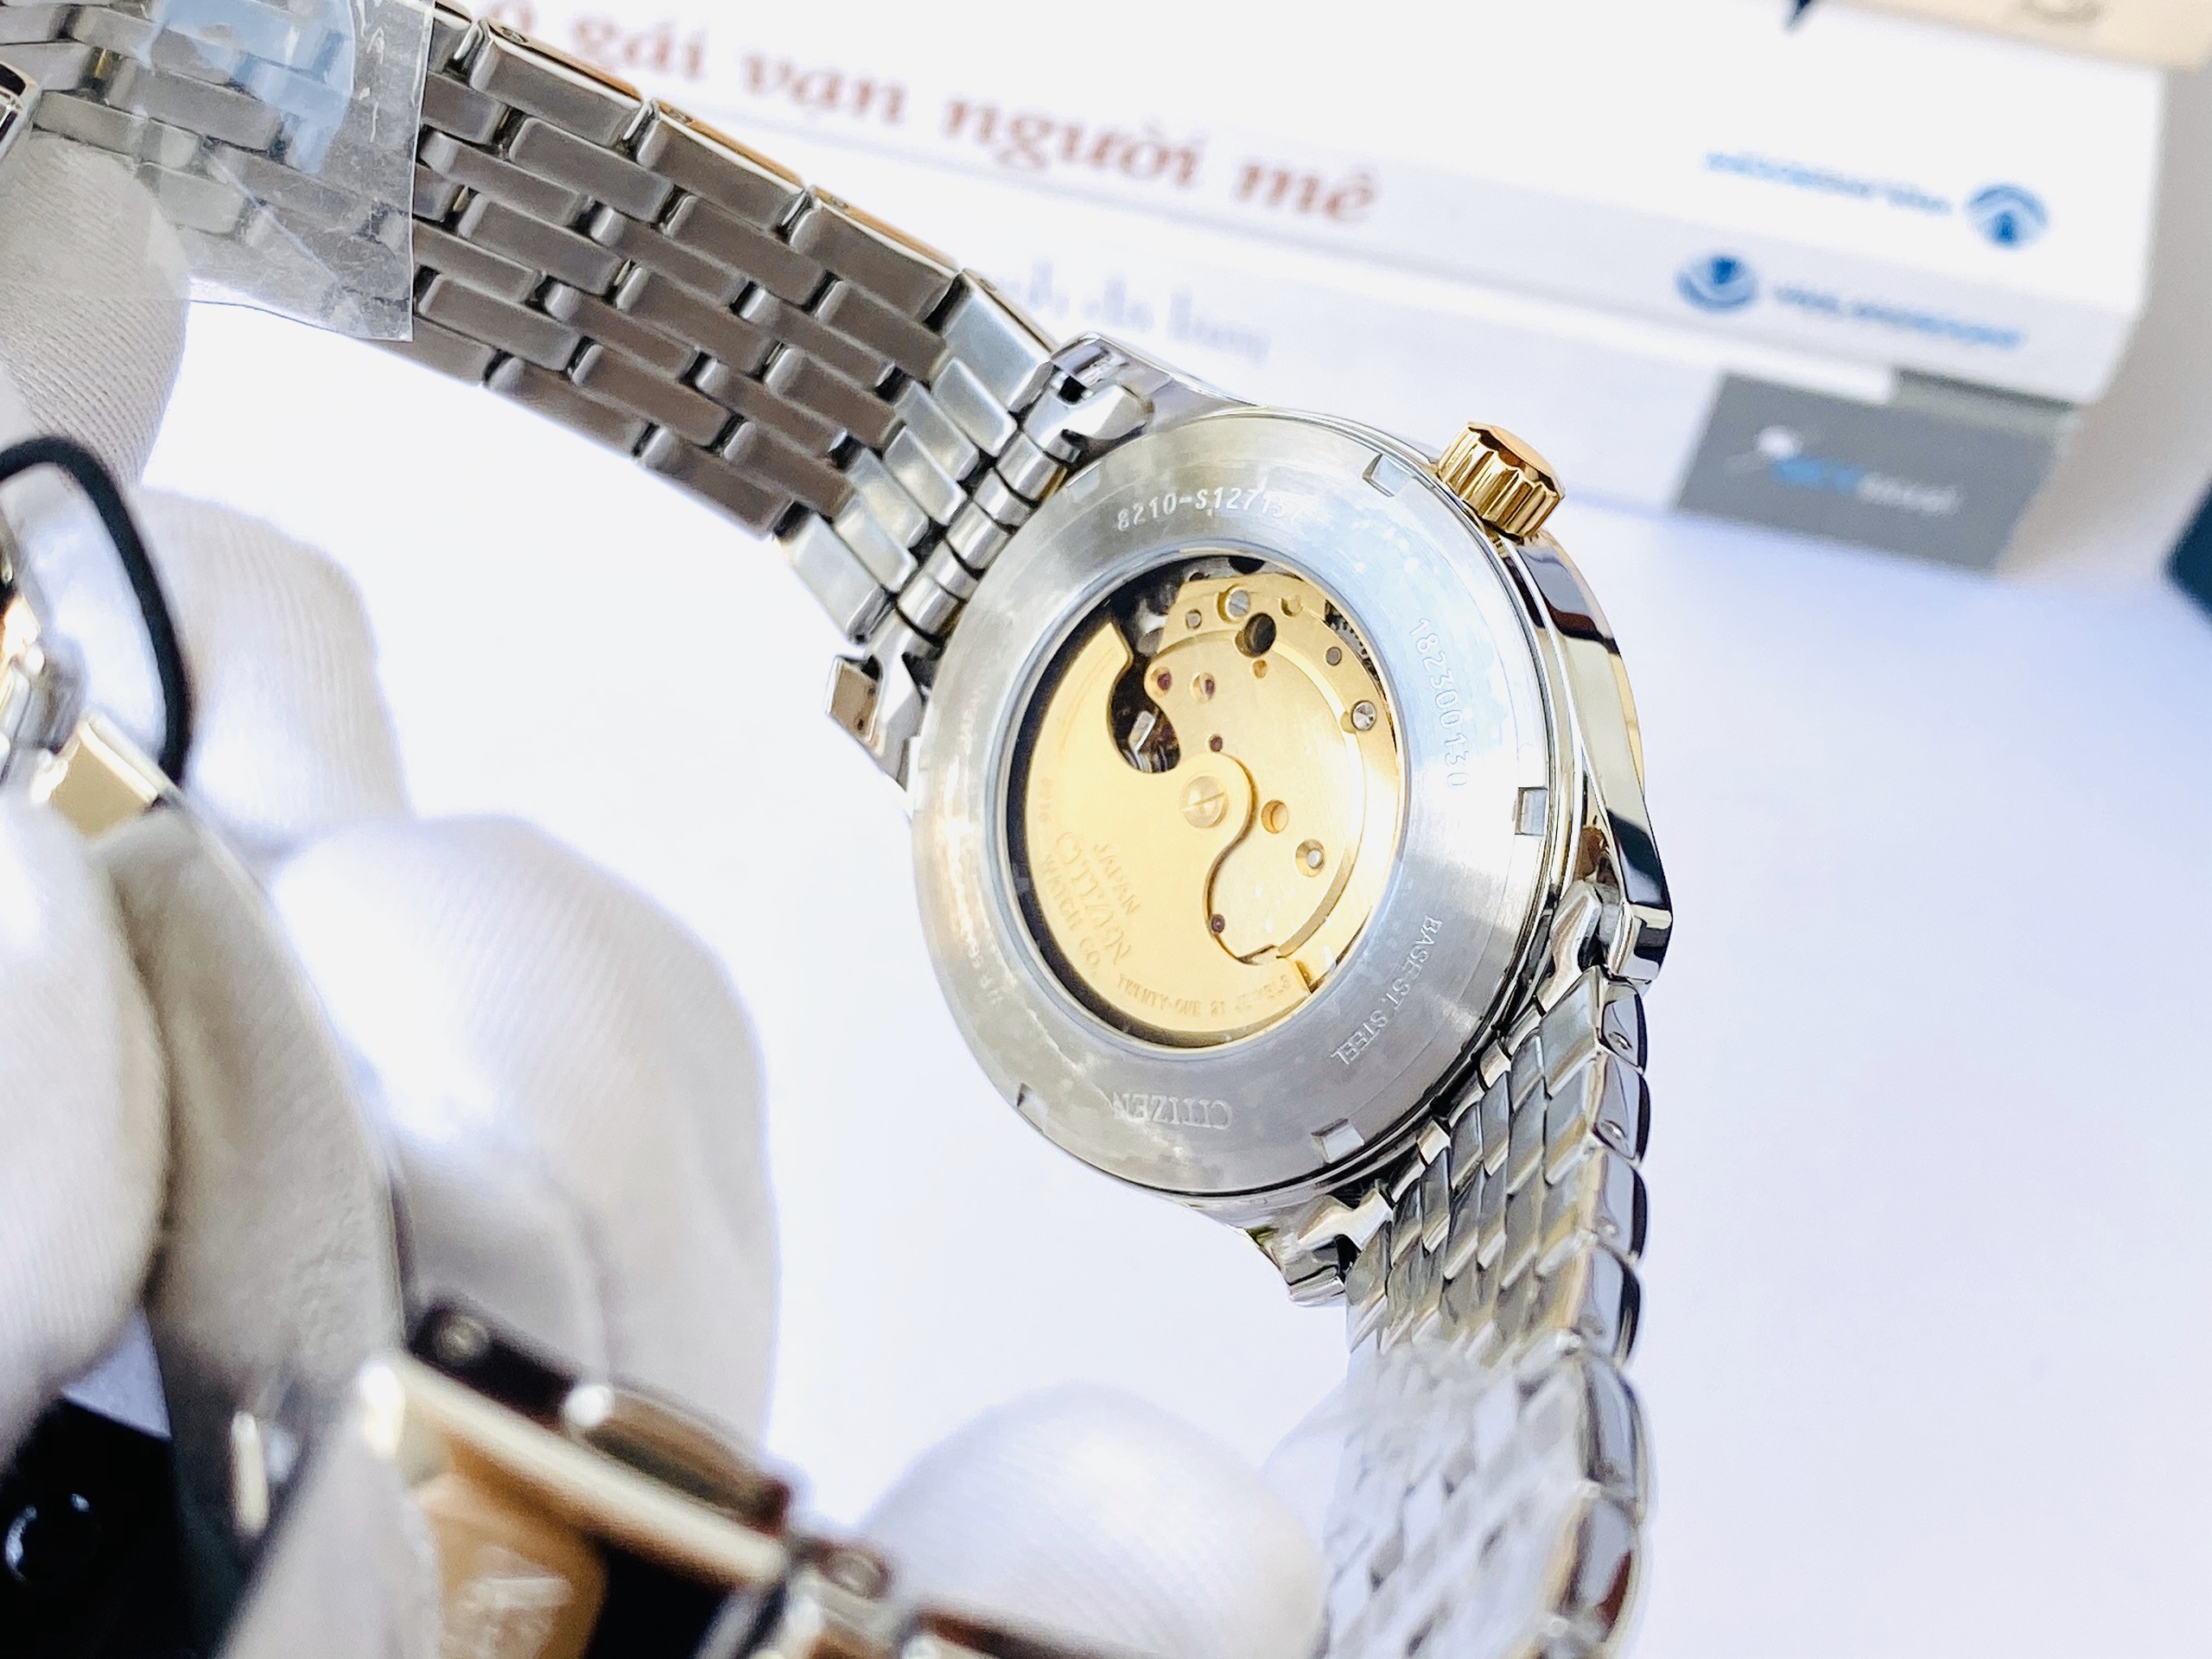 Đồng hồ nam Citizen Automatic NJ0114-84E mạ vàng PVD